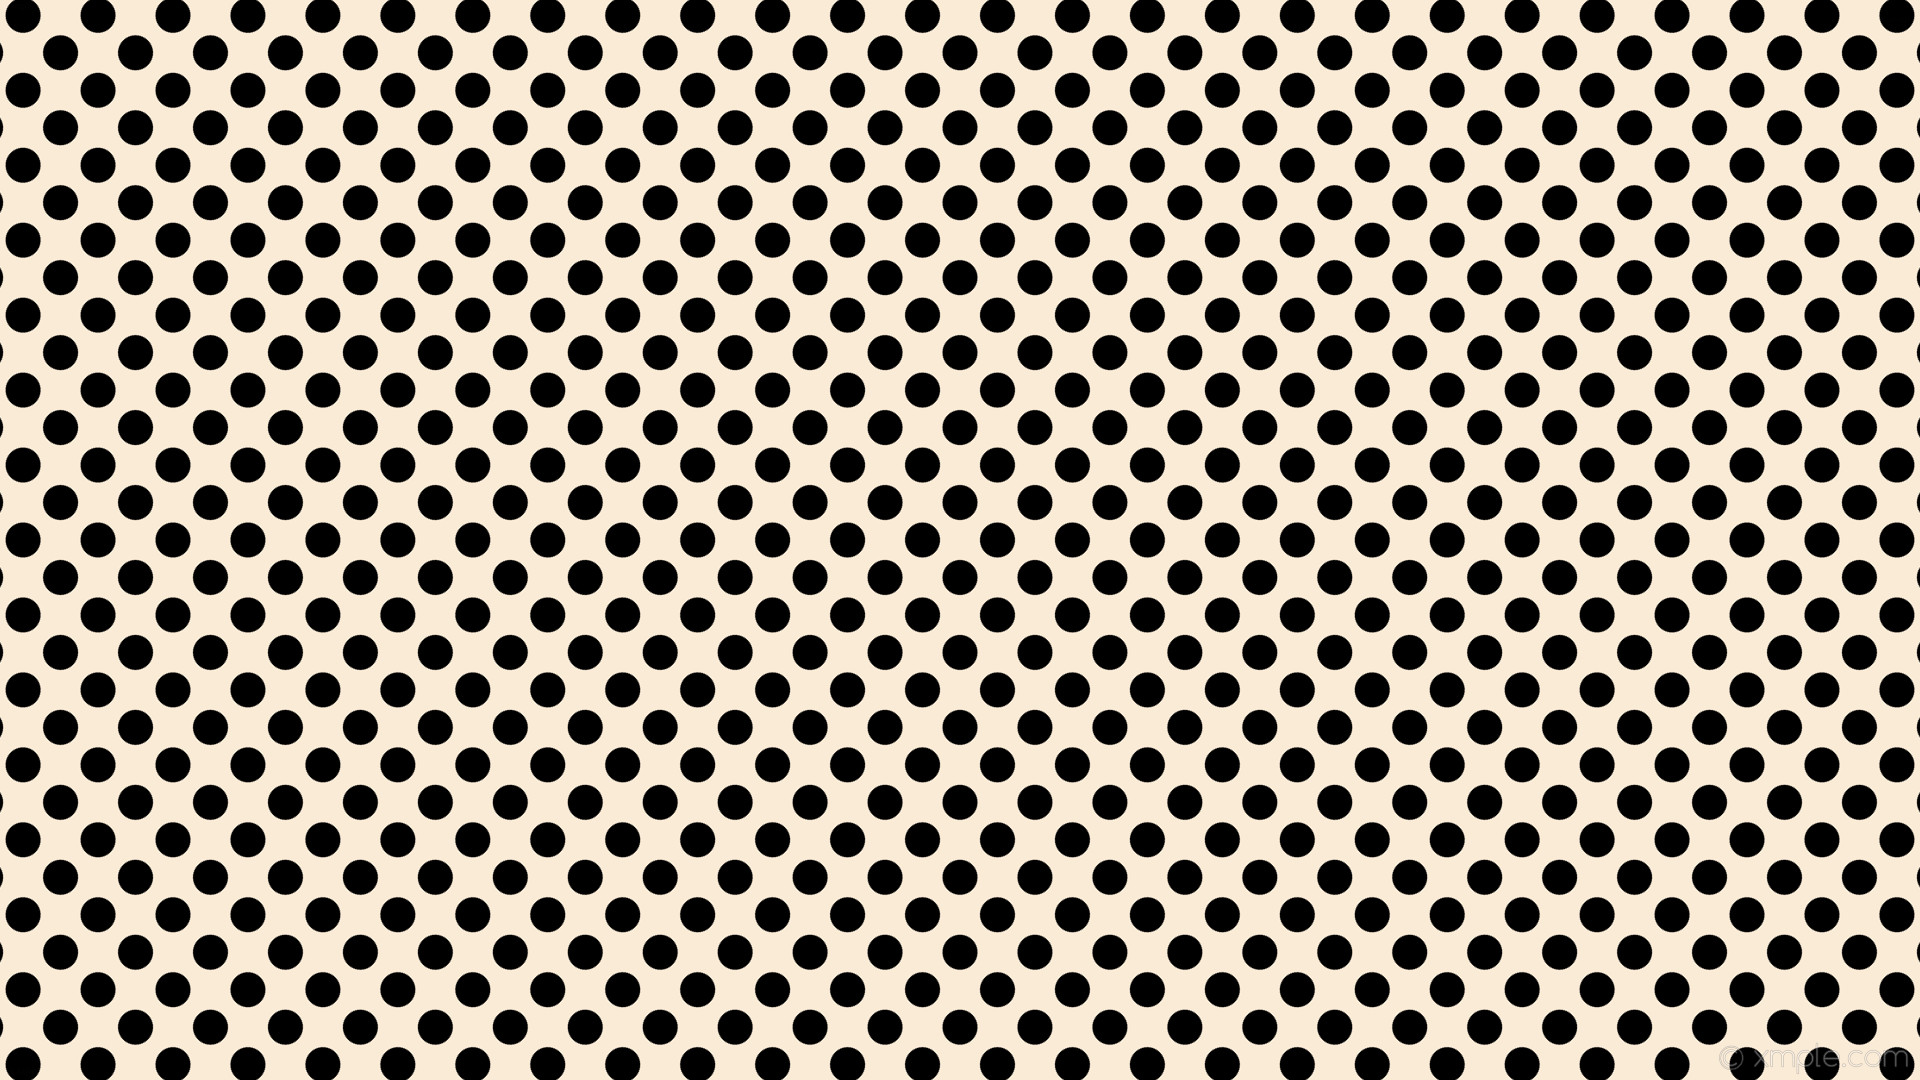 1920x1080 wallpaper polka black white spots dots antique white #faebd7 #000000 315Â°  35px 53px